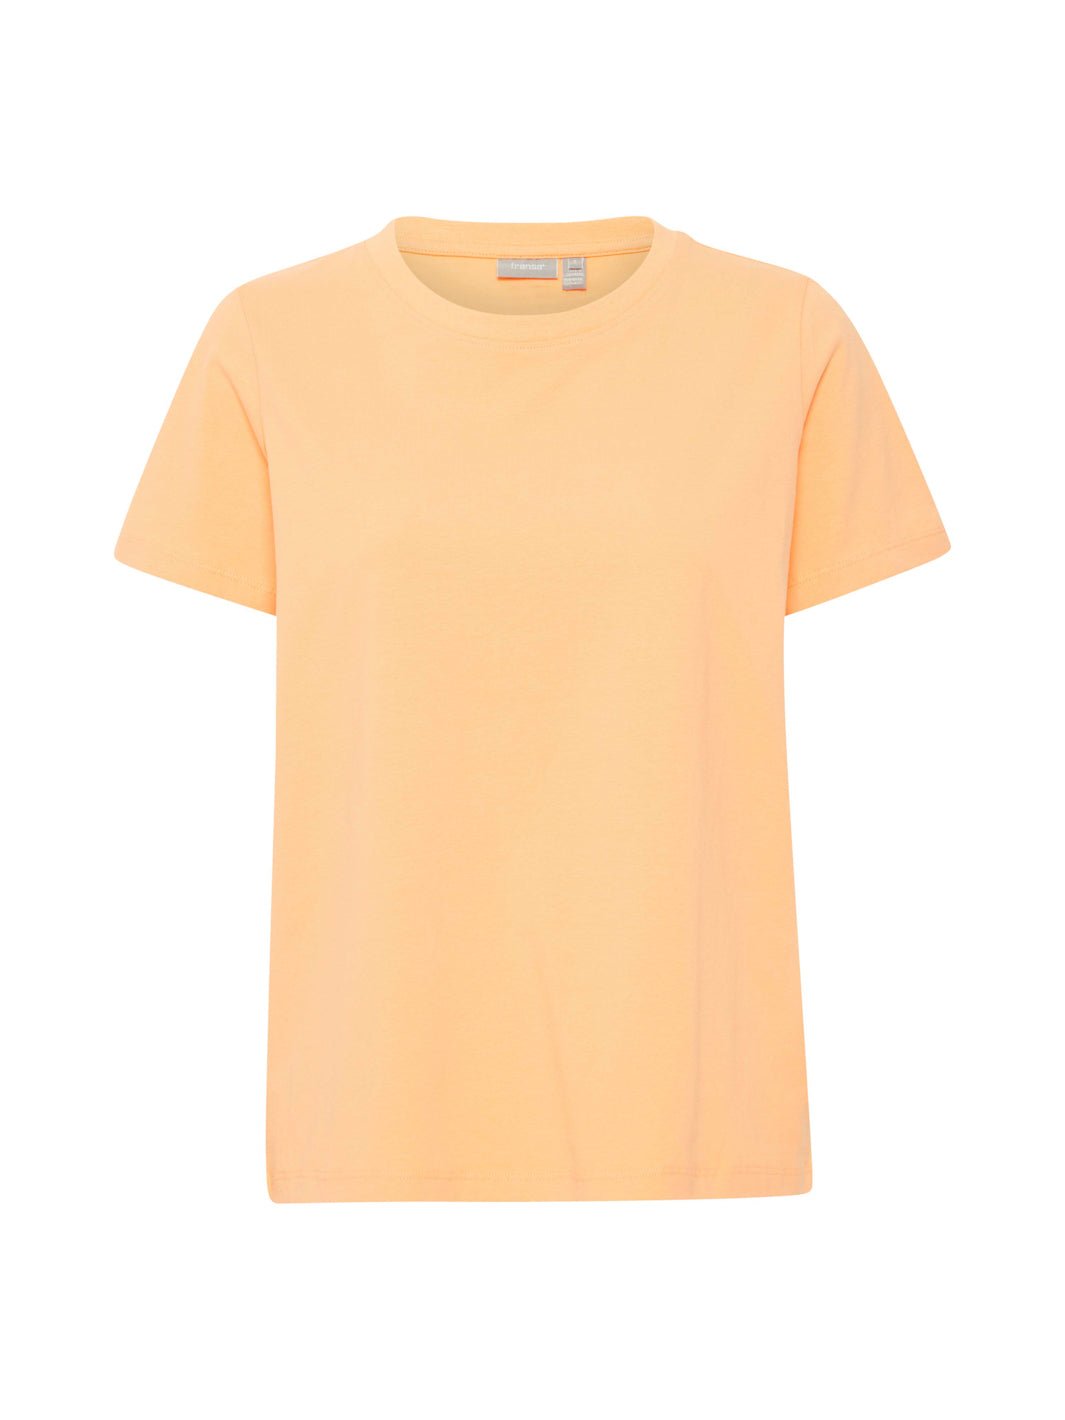 Fransa Zashoulder 1 t-shirt apricot wash - Online-Mode